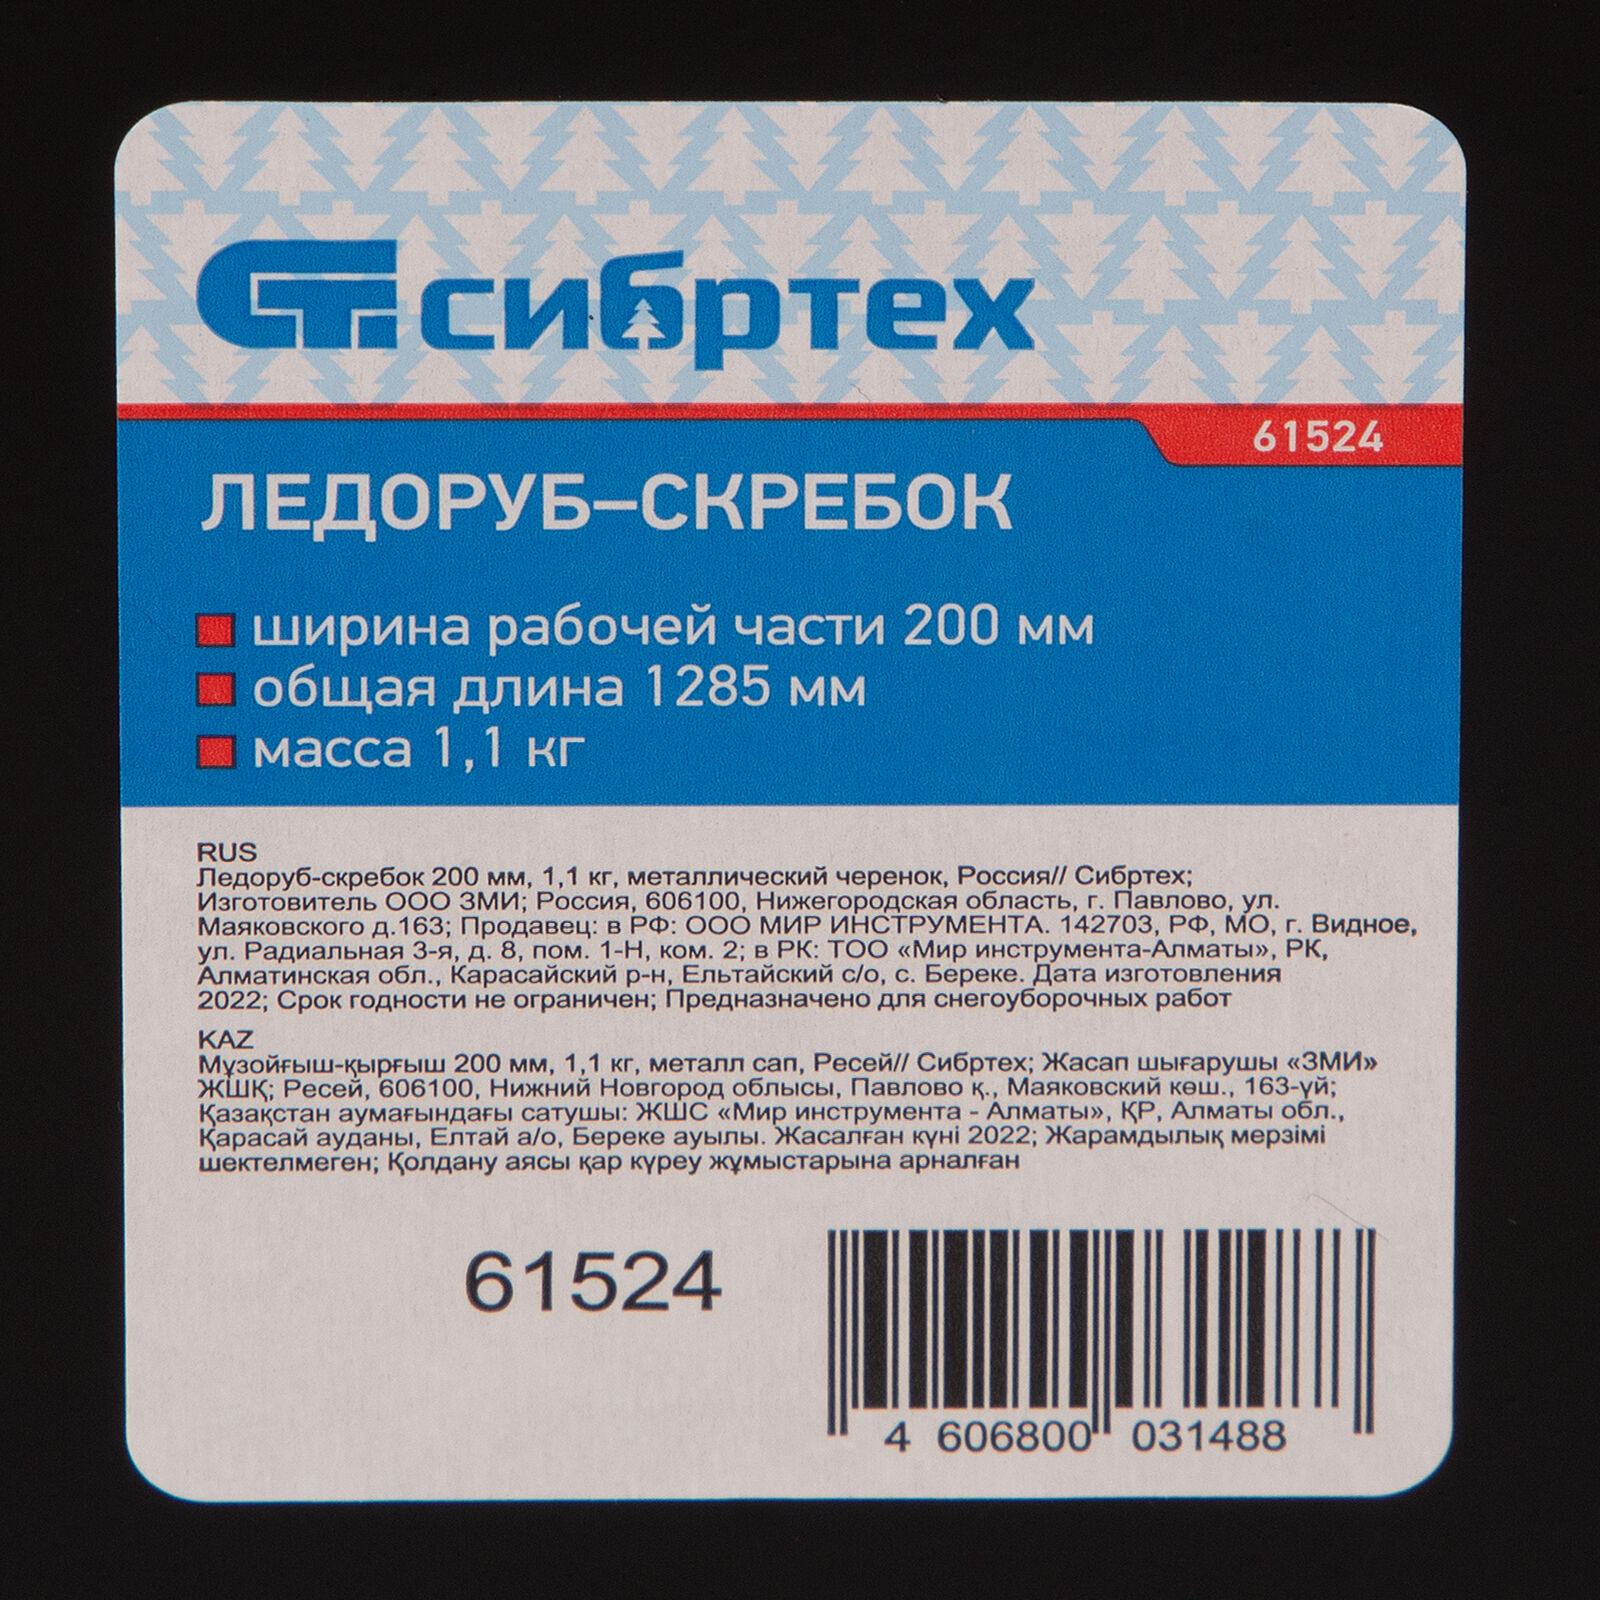 Ледоруб - скребок, 200 мм, 1.1 кг, металлический черенок, Россия, Сибртех 7